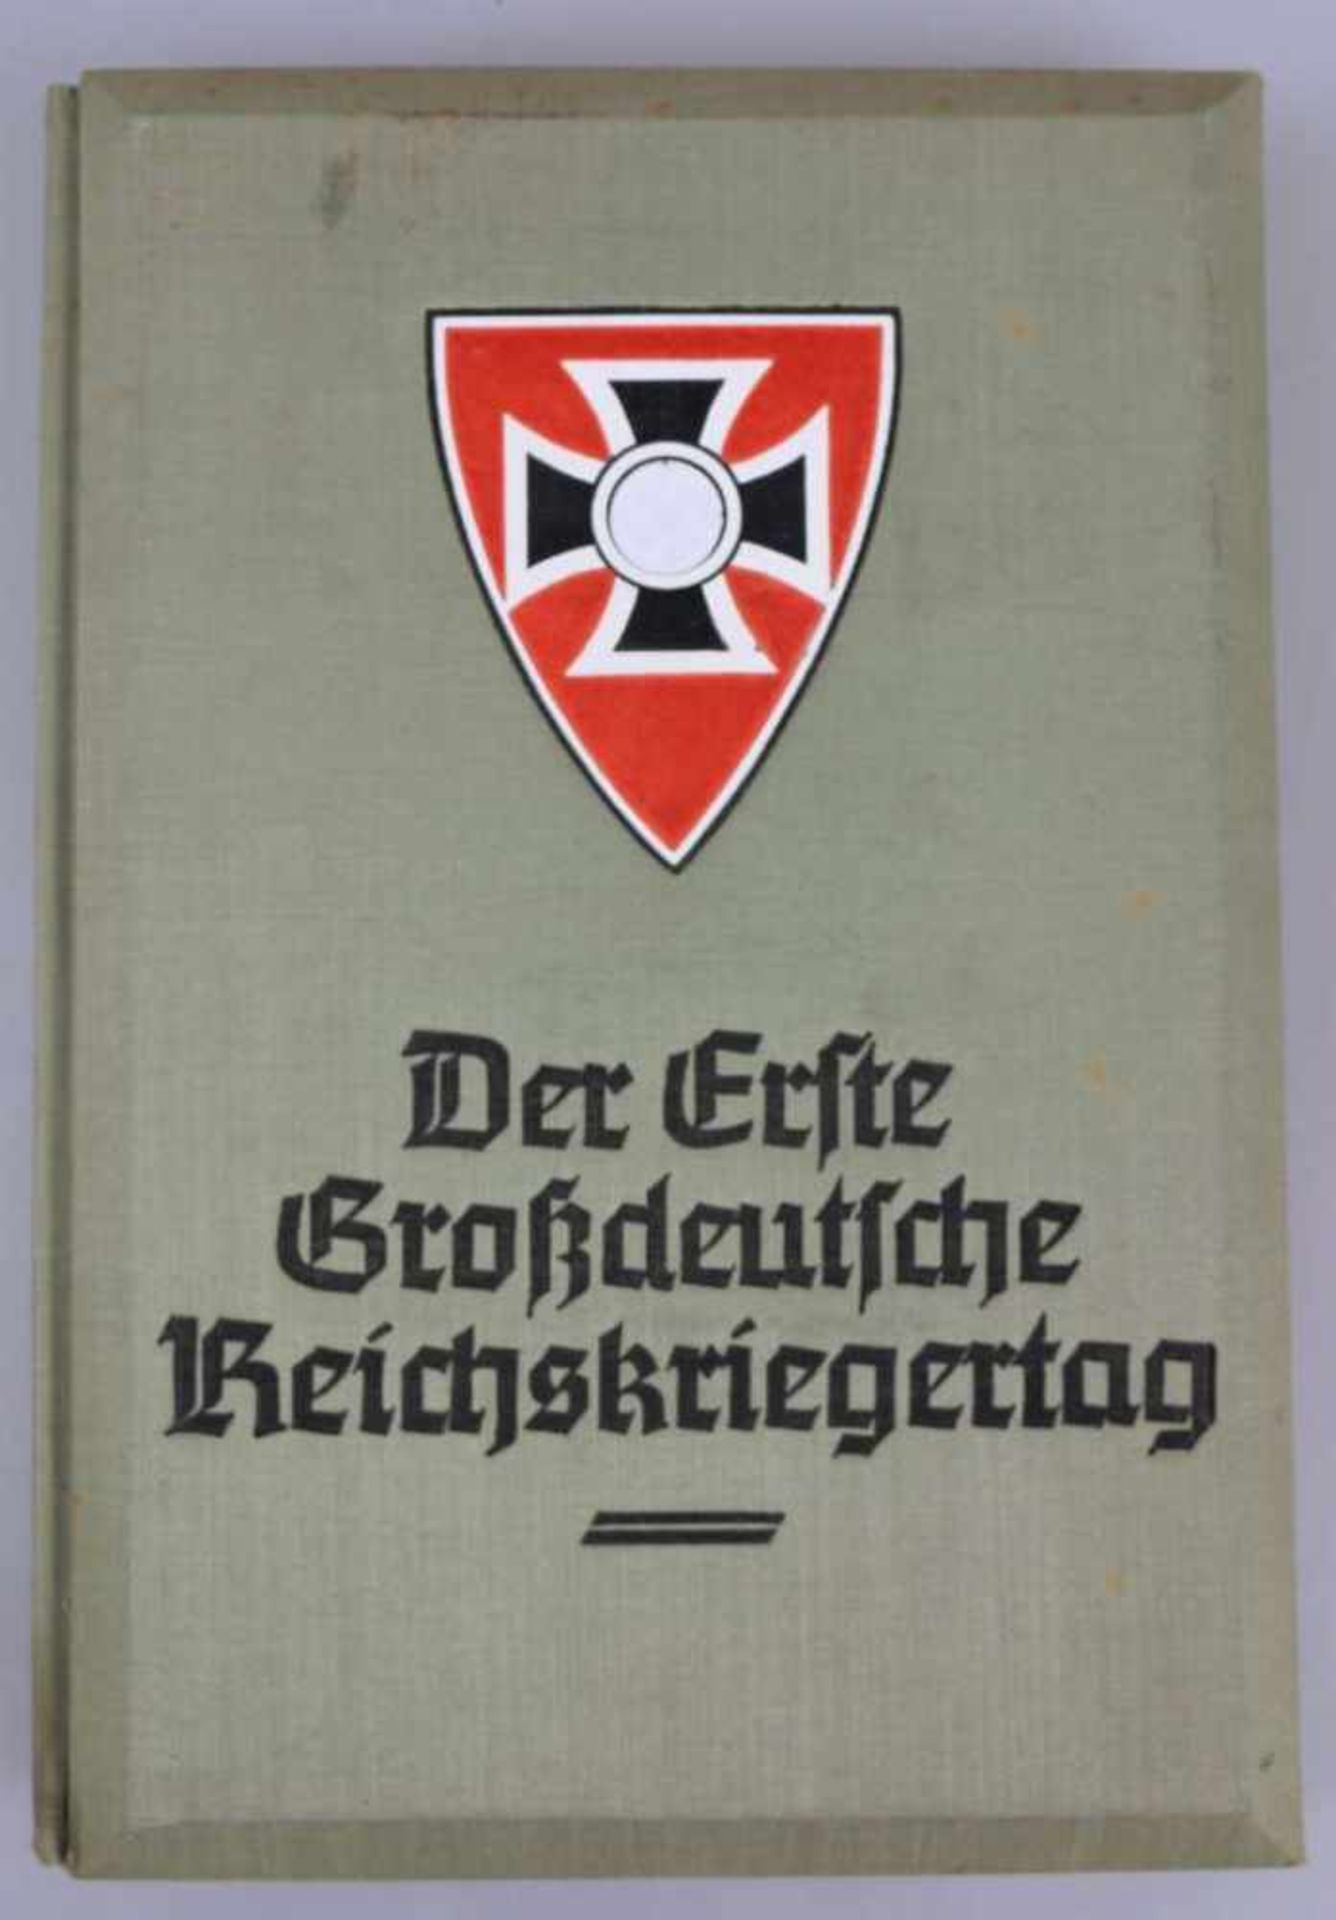 Raumbildalbum "Der Erste Großdeutsche Reichskriegertag", komplett mit 100 Stereobildern und